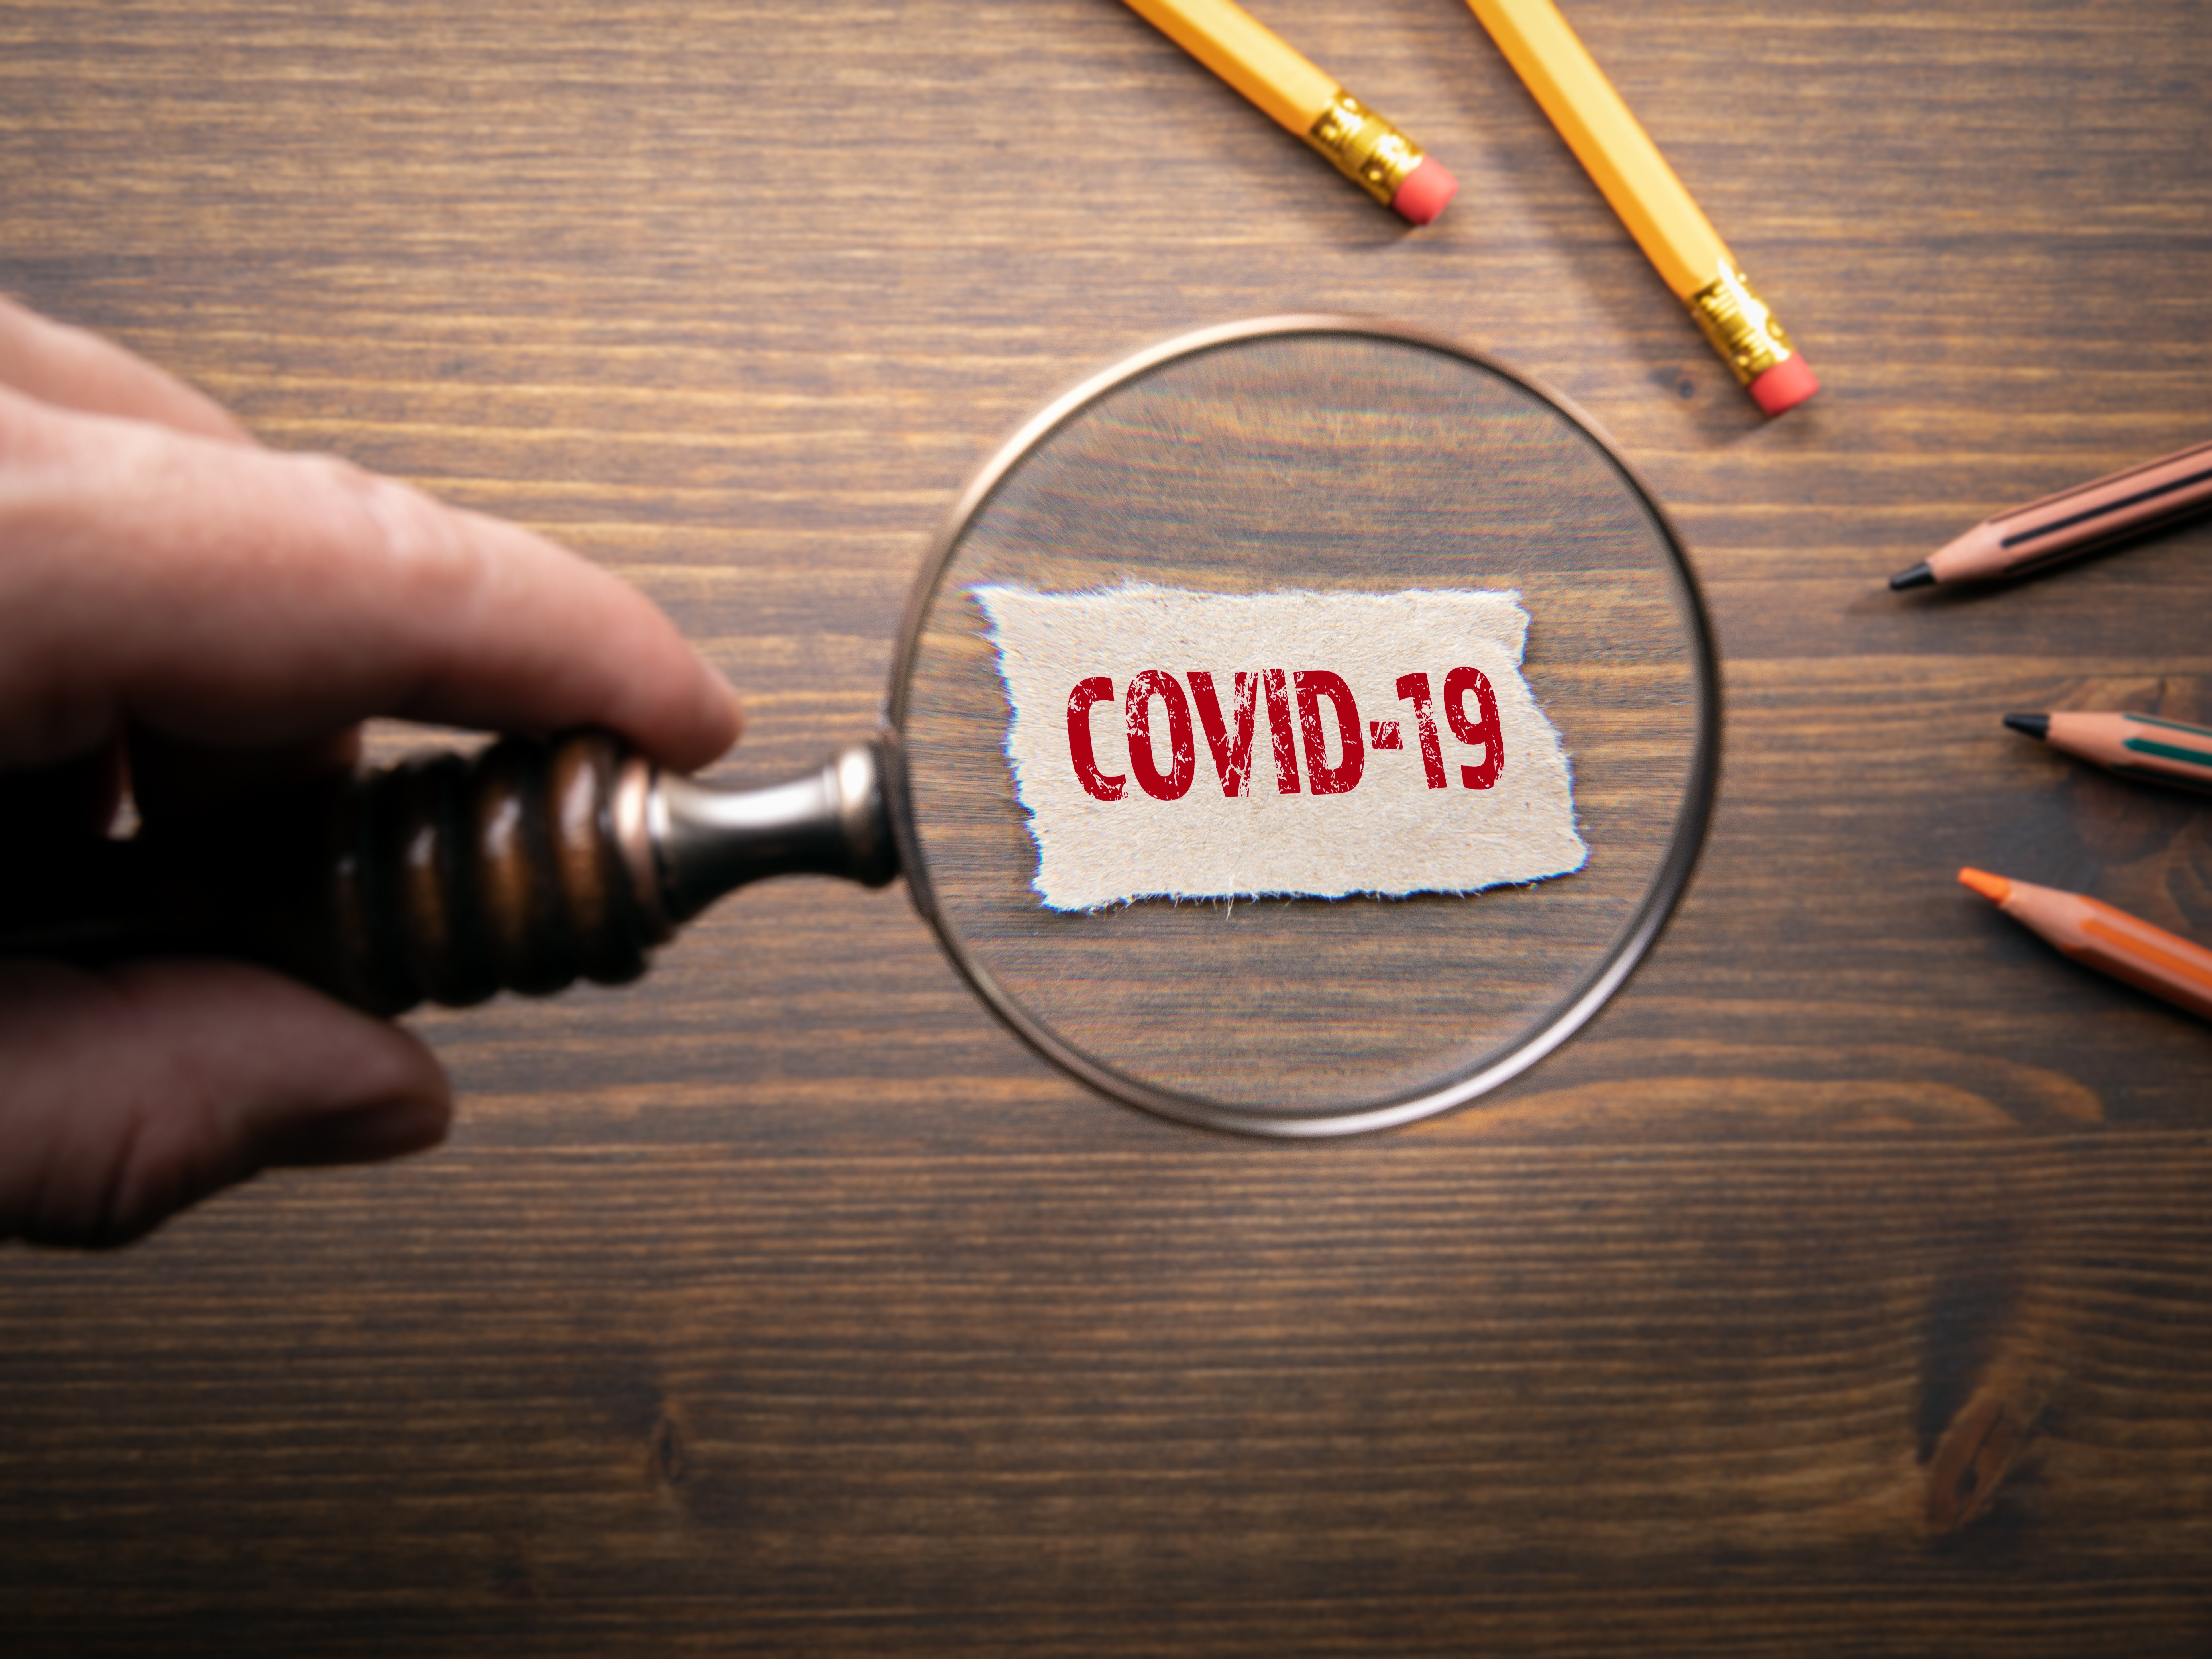 Βουλή: Ρυθμίσεις για την αντιμετώπιση της πανδημίας του κορωνοϊού COVID-19 και την προστασία της δημόσιας υγείας